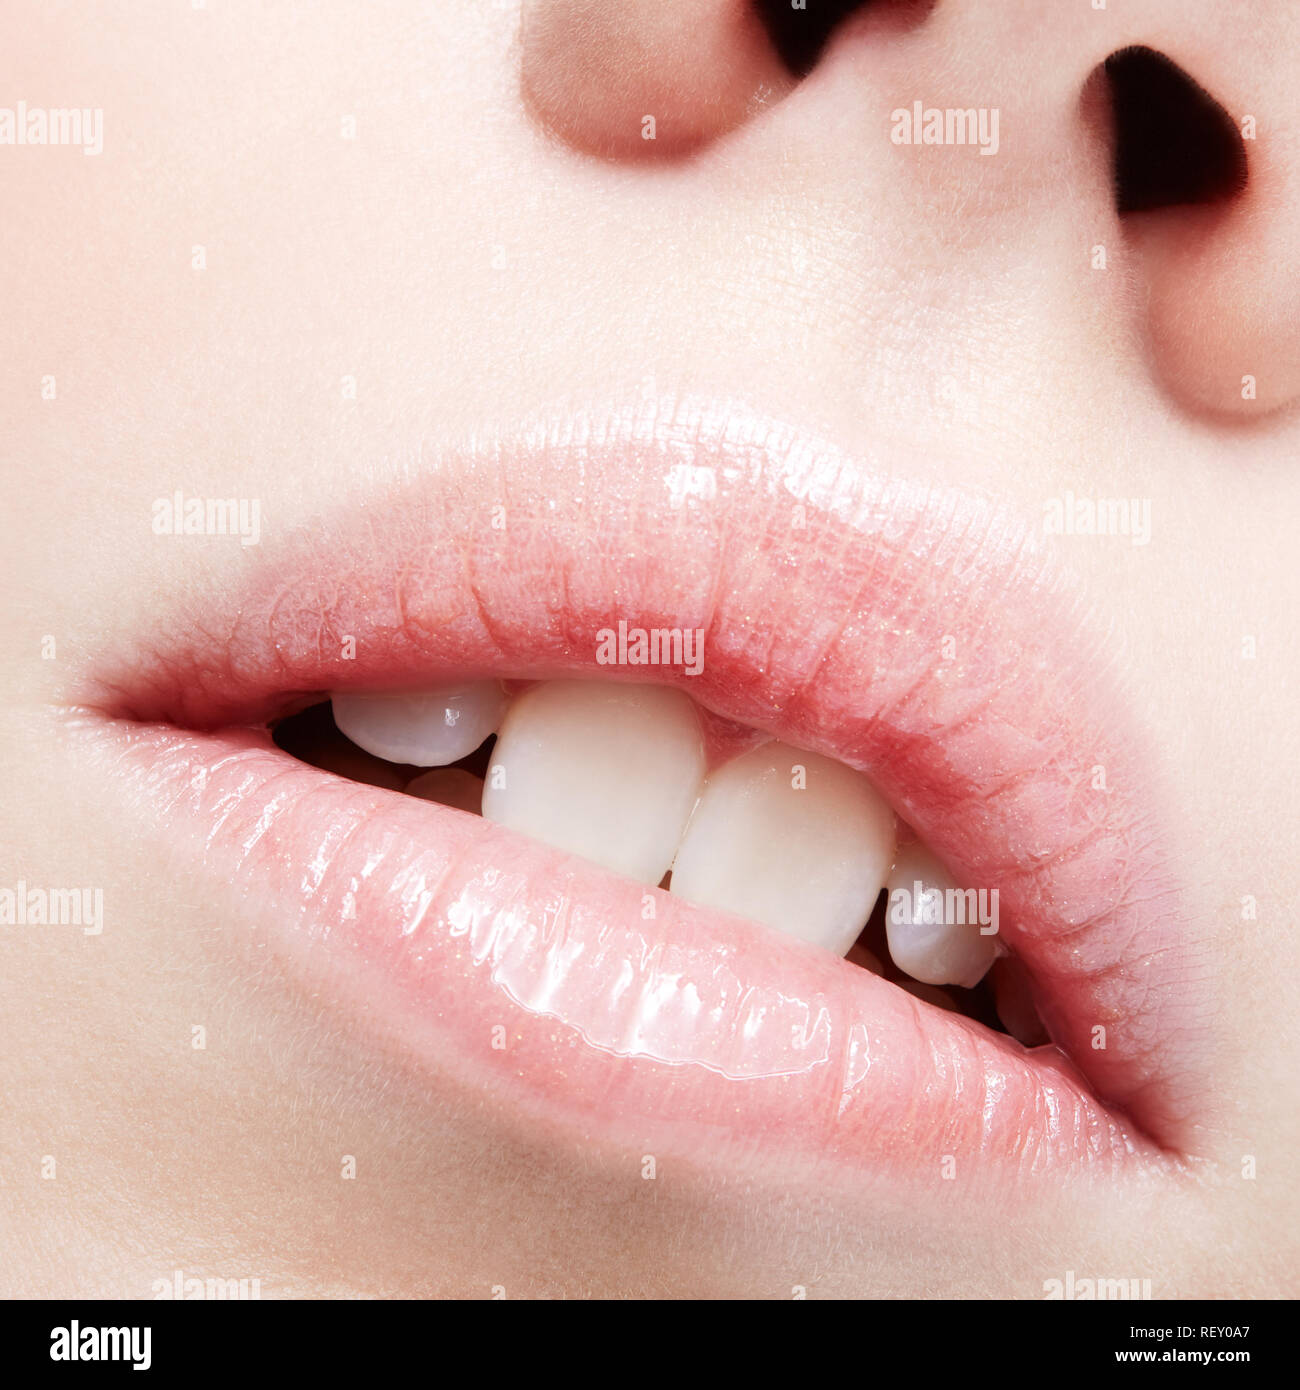 Closeup shot of human female face. Woman with pink plump lips makeup. Stock Photo